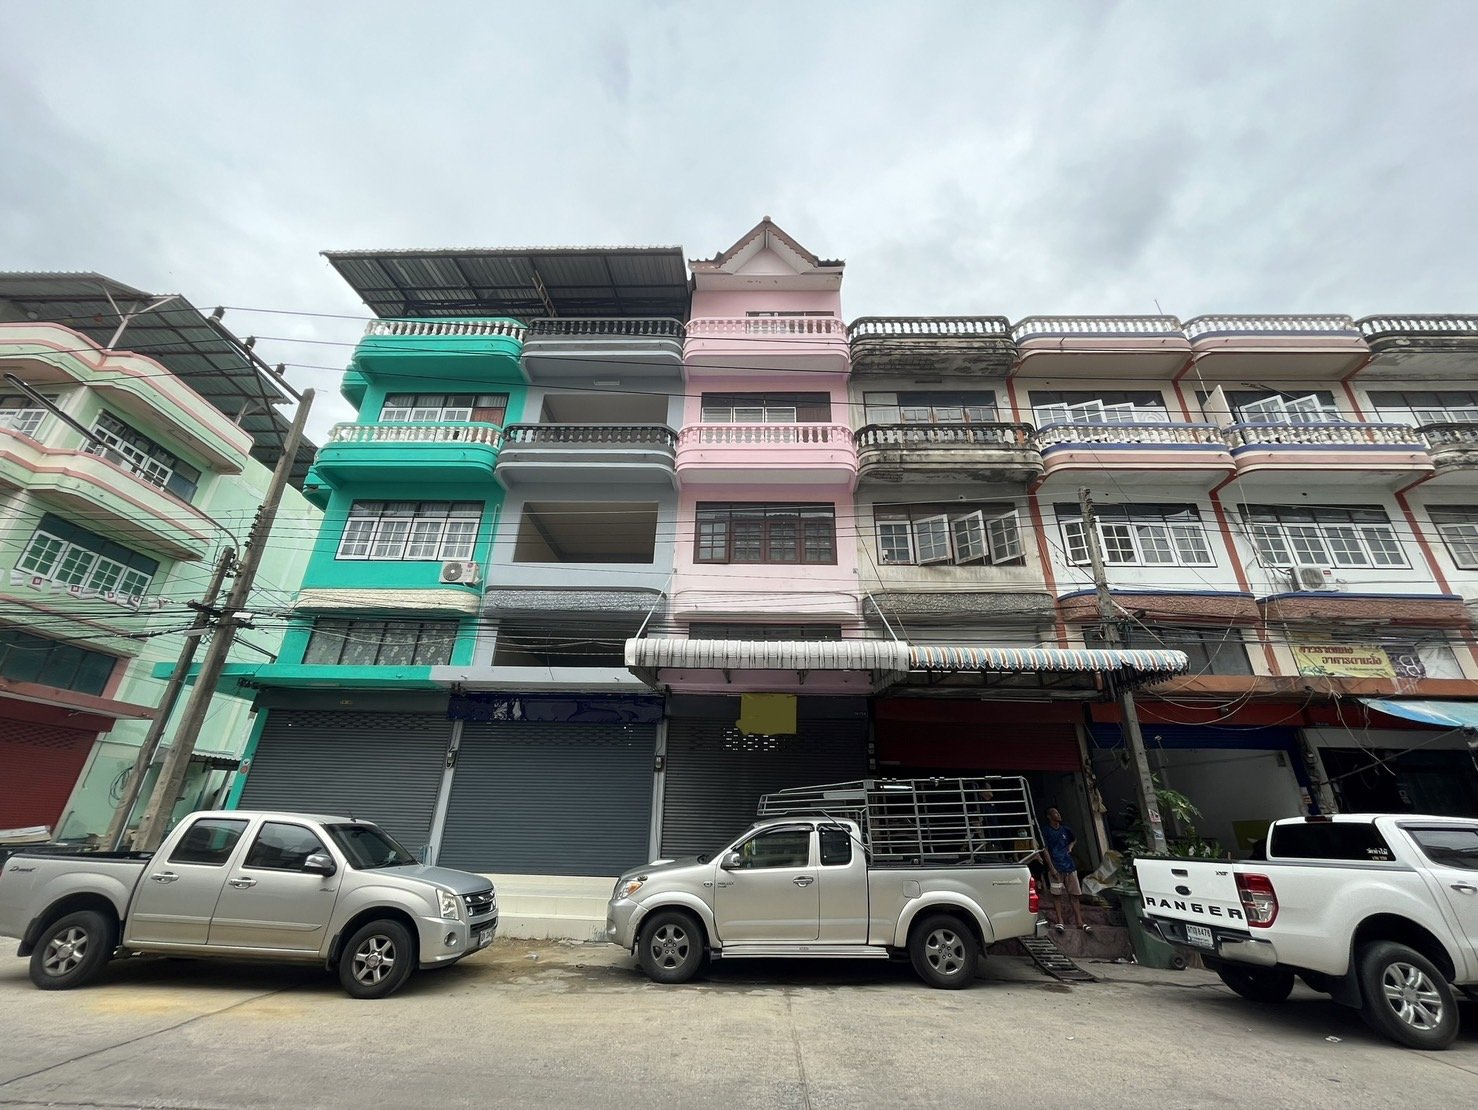 出售非常便宜的 4 层商业大楼，Petchkasem 路，（Siam Om Noi Boxing Stadium）Damrong Villa 村， 适合商业，居住，库存